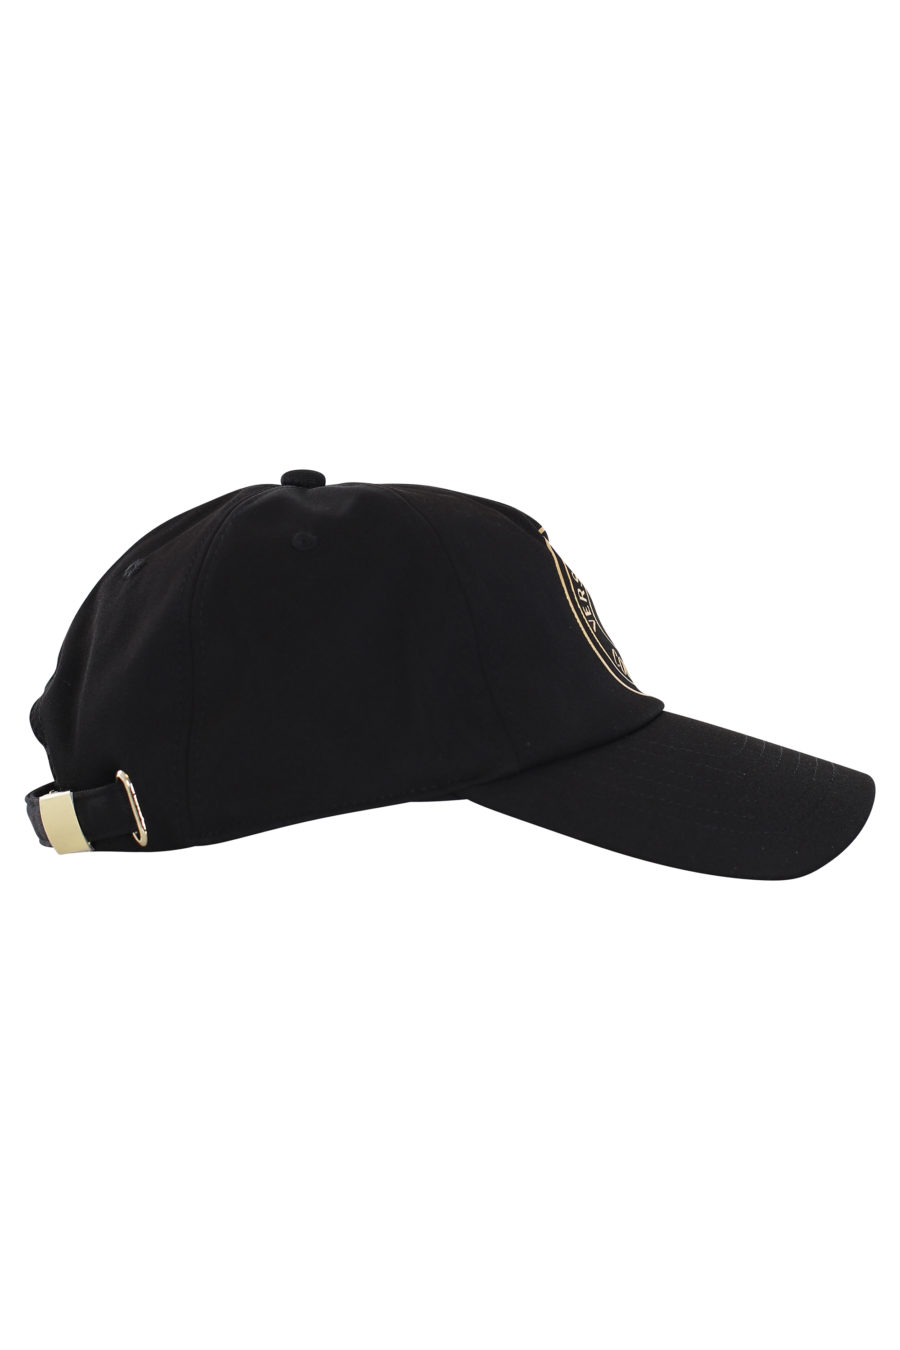 Gorra negra con logo dorado redondo - IMG 0139